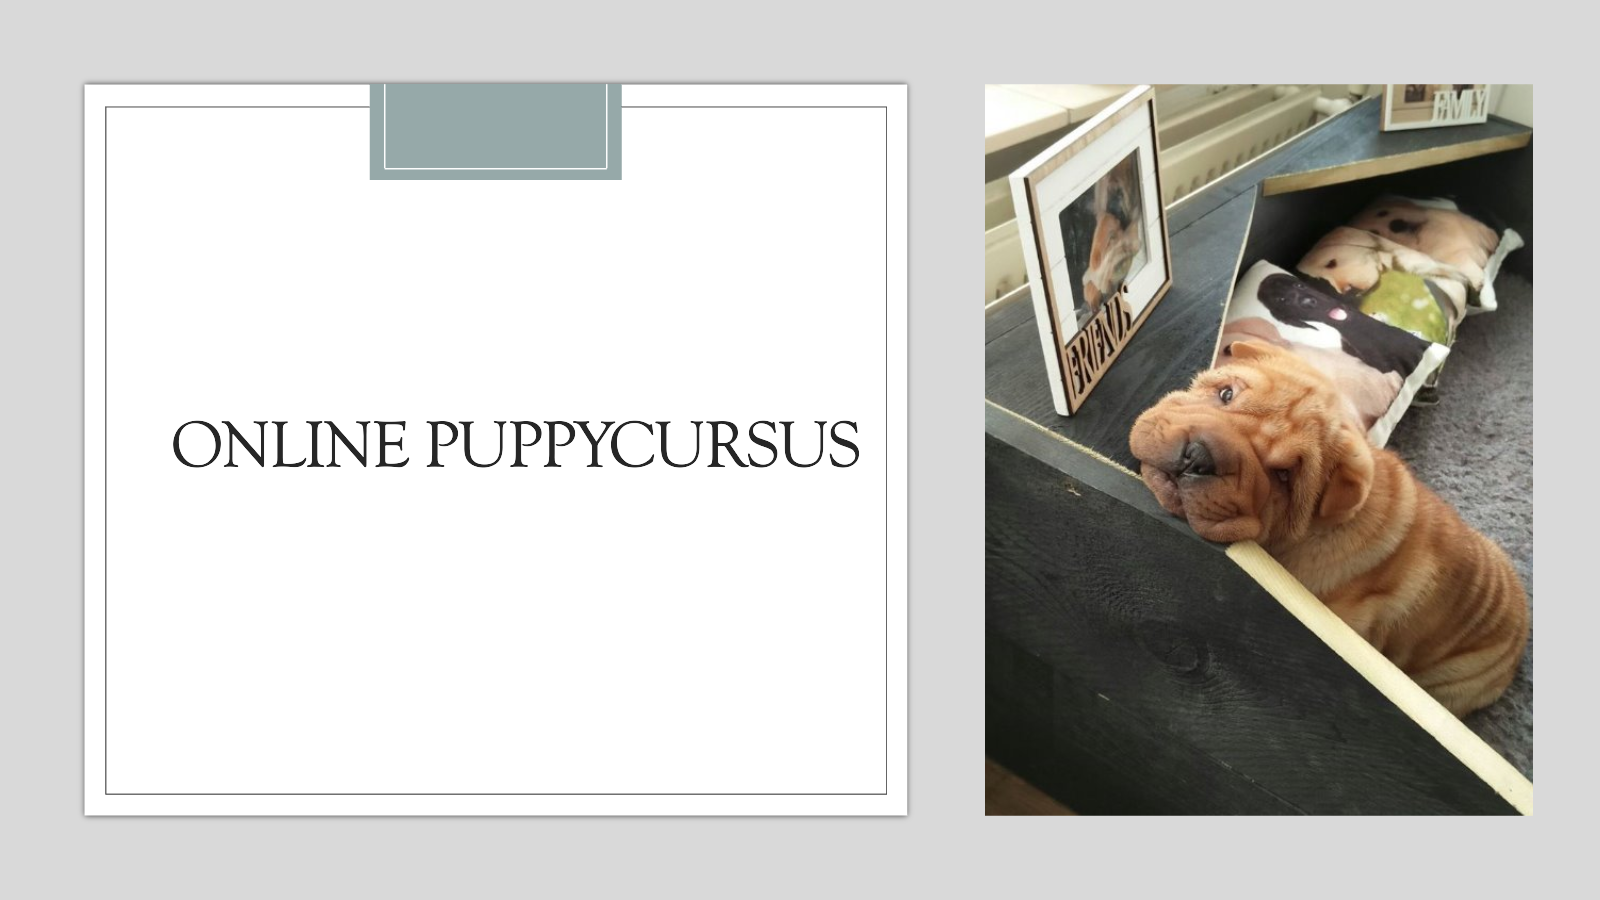 Online puppycursus_1